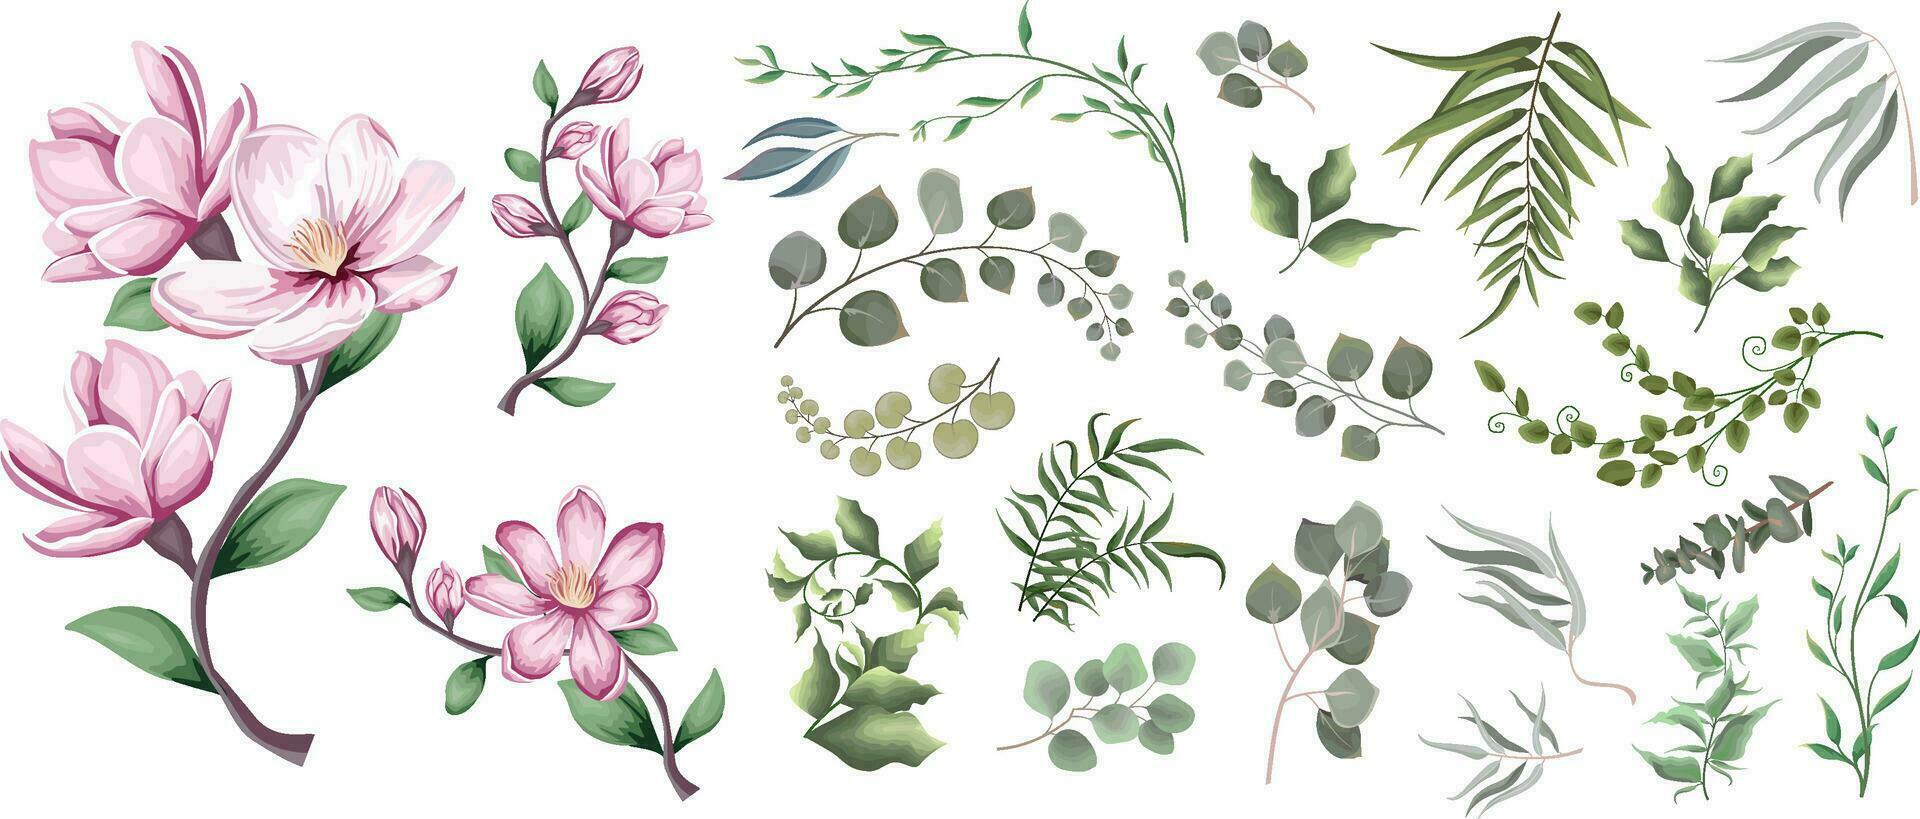 mischen von Kräuter und Pflanzen Vektor groß Sammlung. Grün Pflanzen und Blätter. alle Elemente sind isoliert. ein Ast von Rosa Magnolie, Sakura.